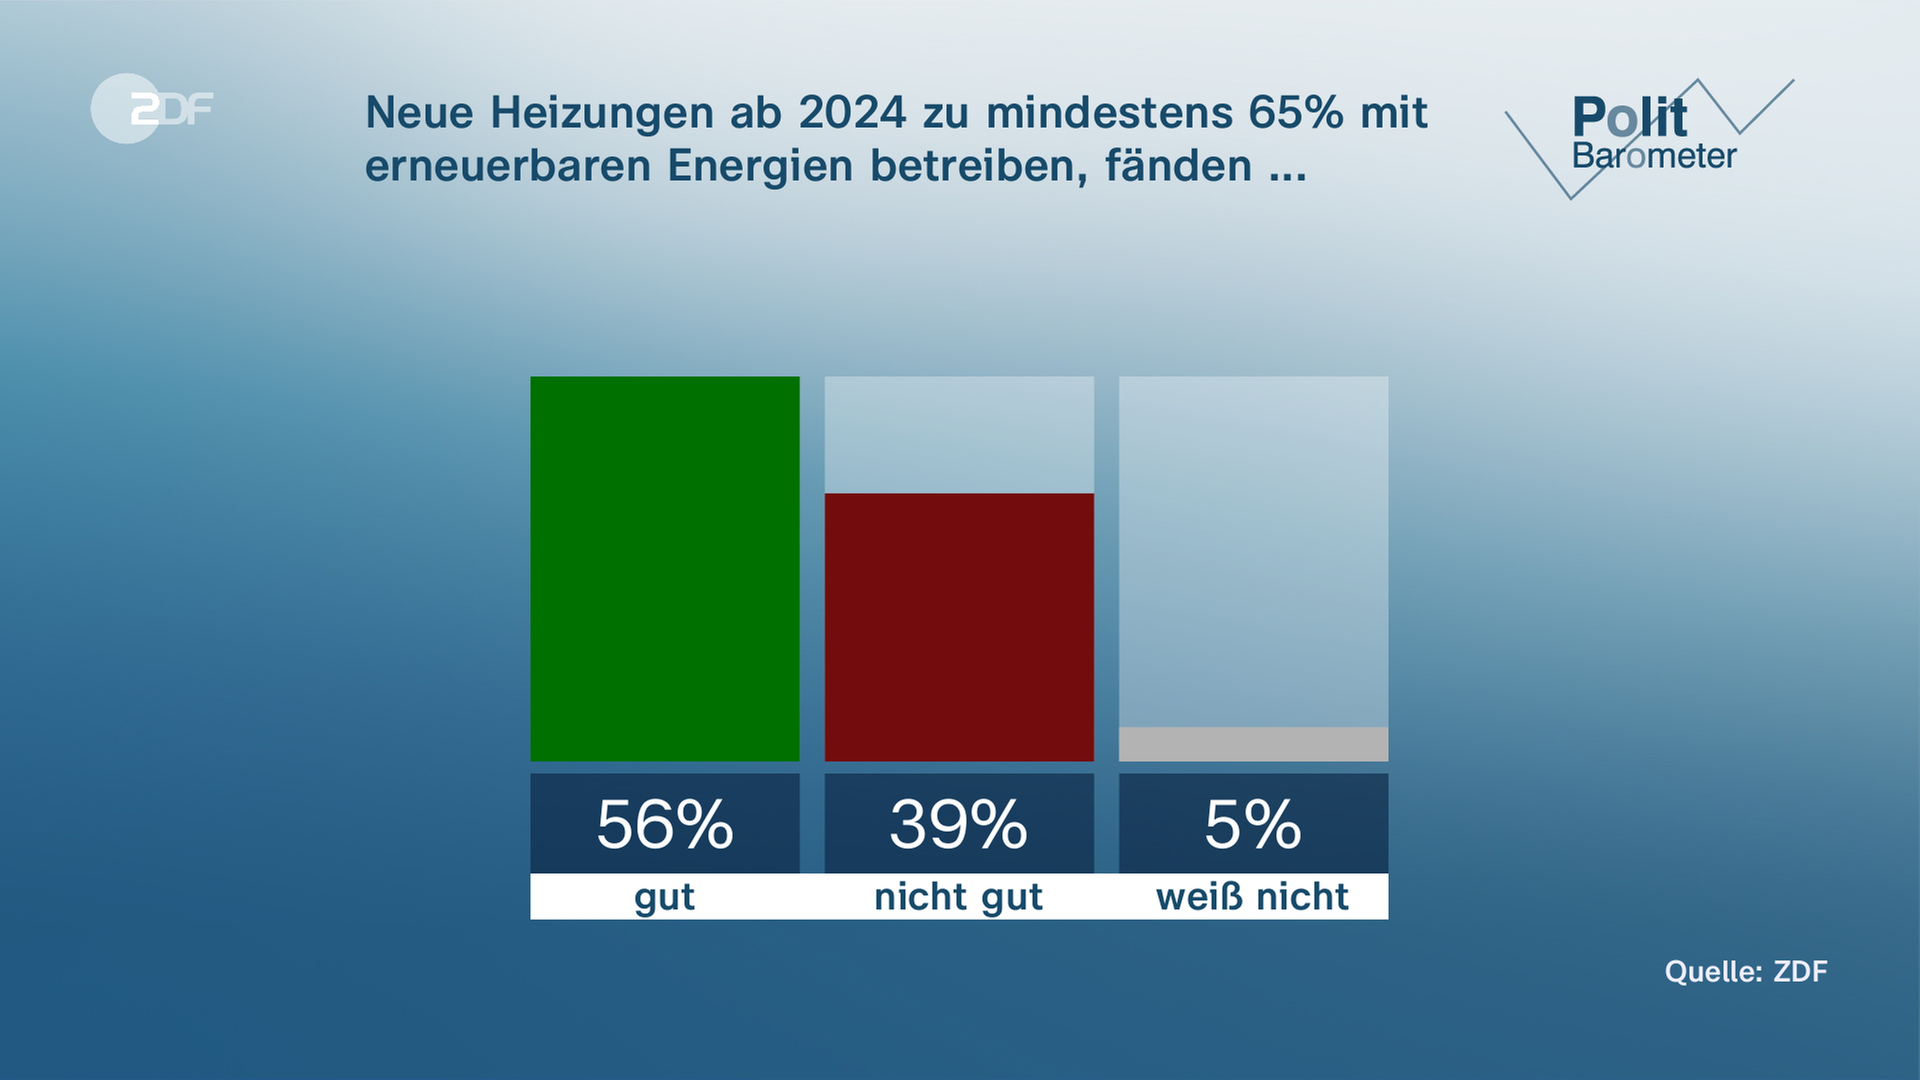 Politbarometer: Neue Heizungen ab 2024